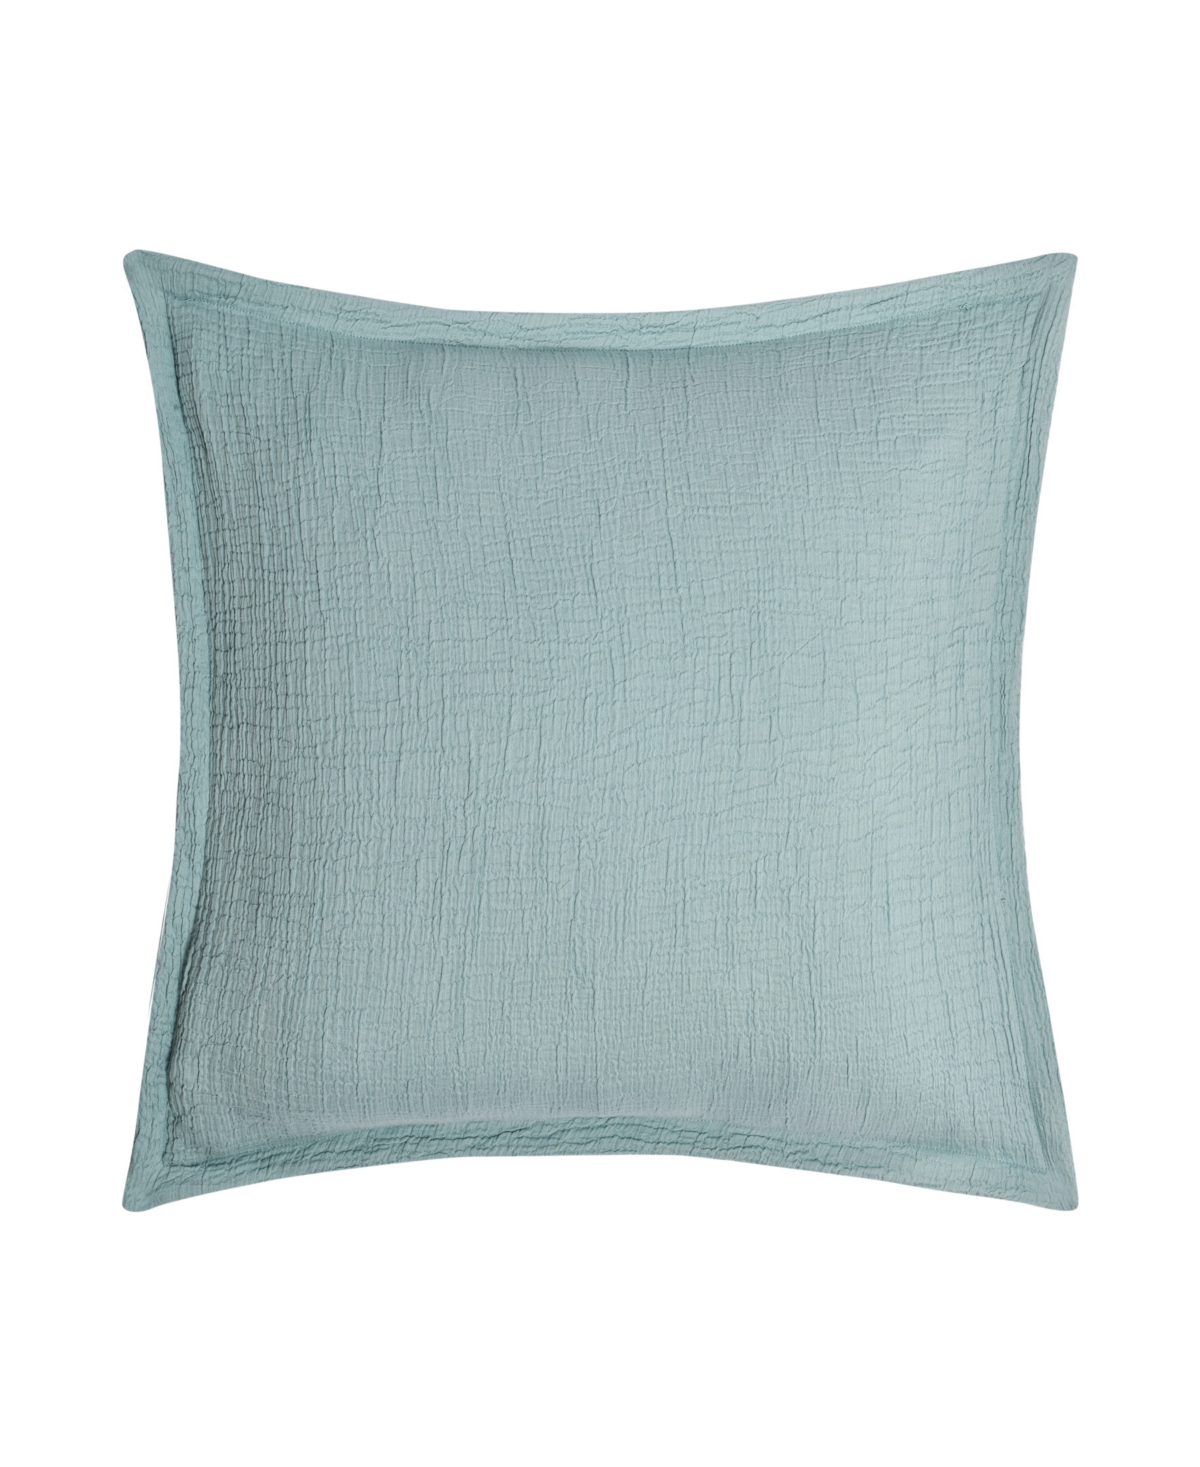 White Sand South Seas Square Decorative Pillow Cover, 20" X 20" In Aqua